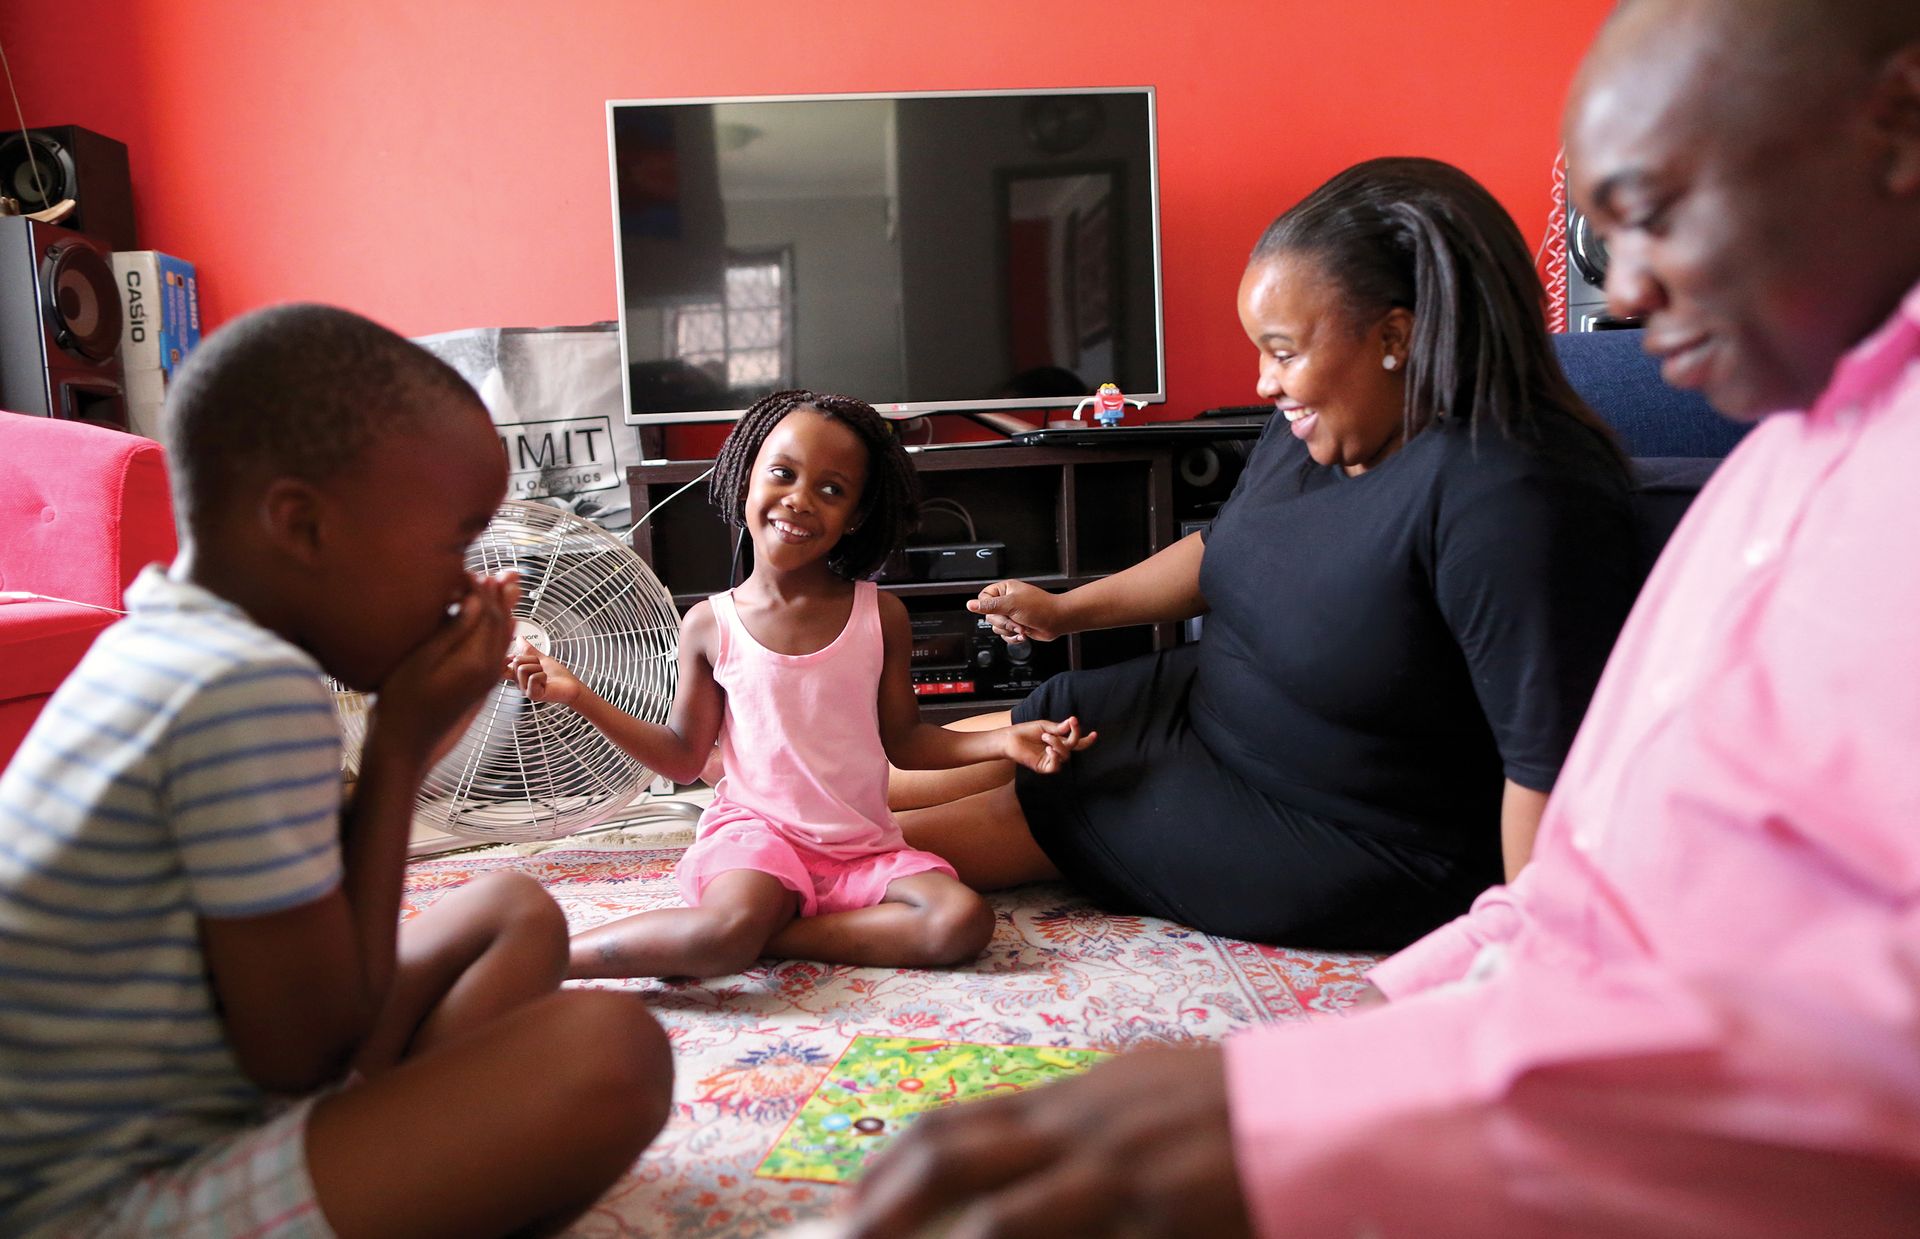 Семья Джири из Кейптауна, Южная Африка, любит проводить время вместе. Родители Таона (справа) и Аманды (в центре справа) играют в игры и делятся Евангелием со своими детьми, Тариро (в центре слева) и Тендай (слева).